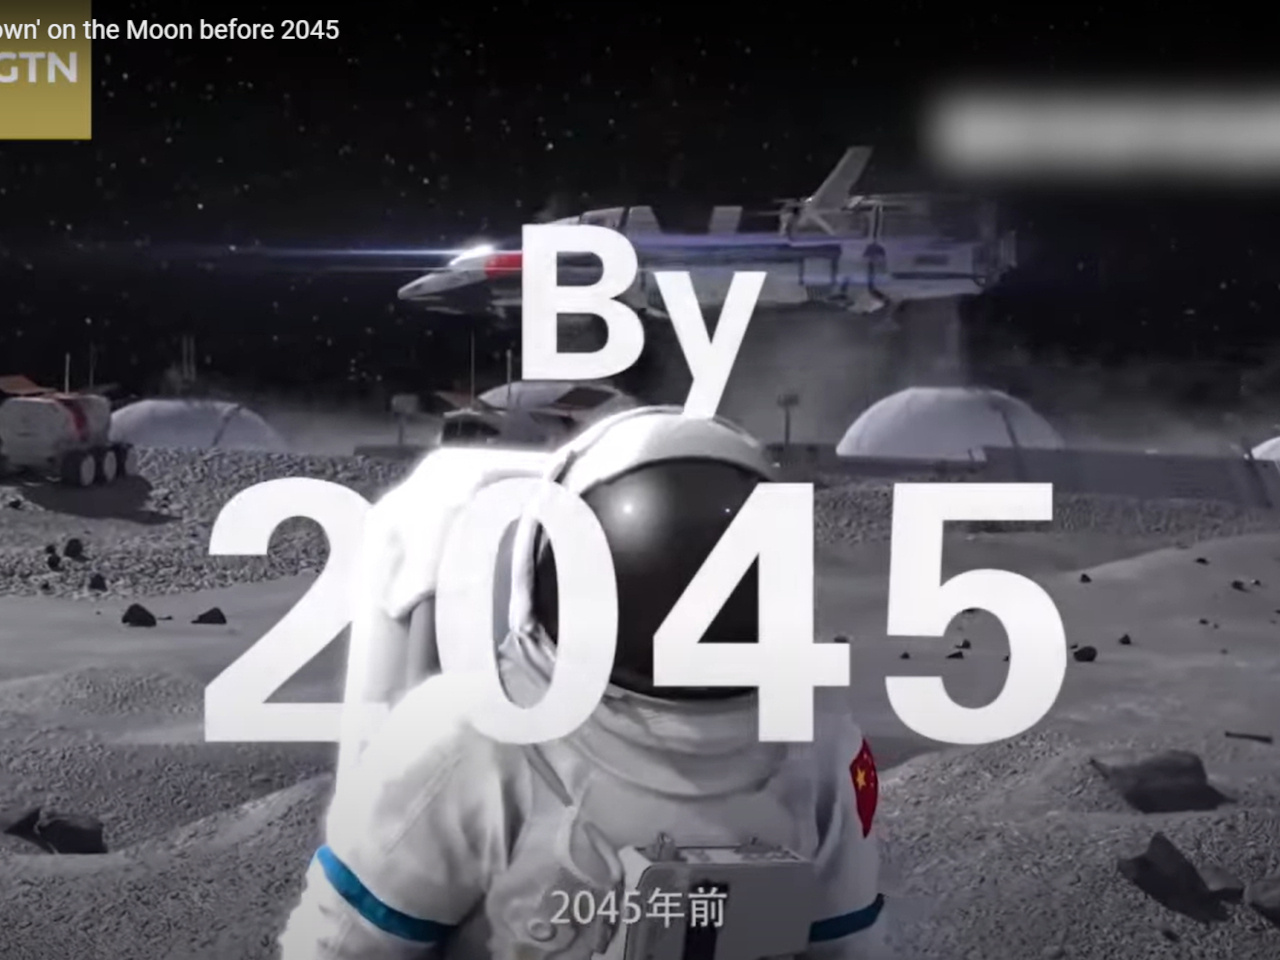 中国、月面基地計画のコンセプト動画を公開--スペースシャトルらしき宇宙船も